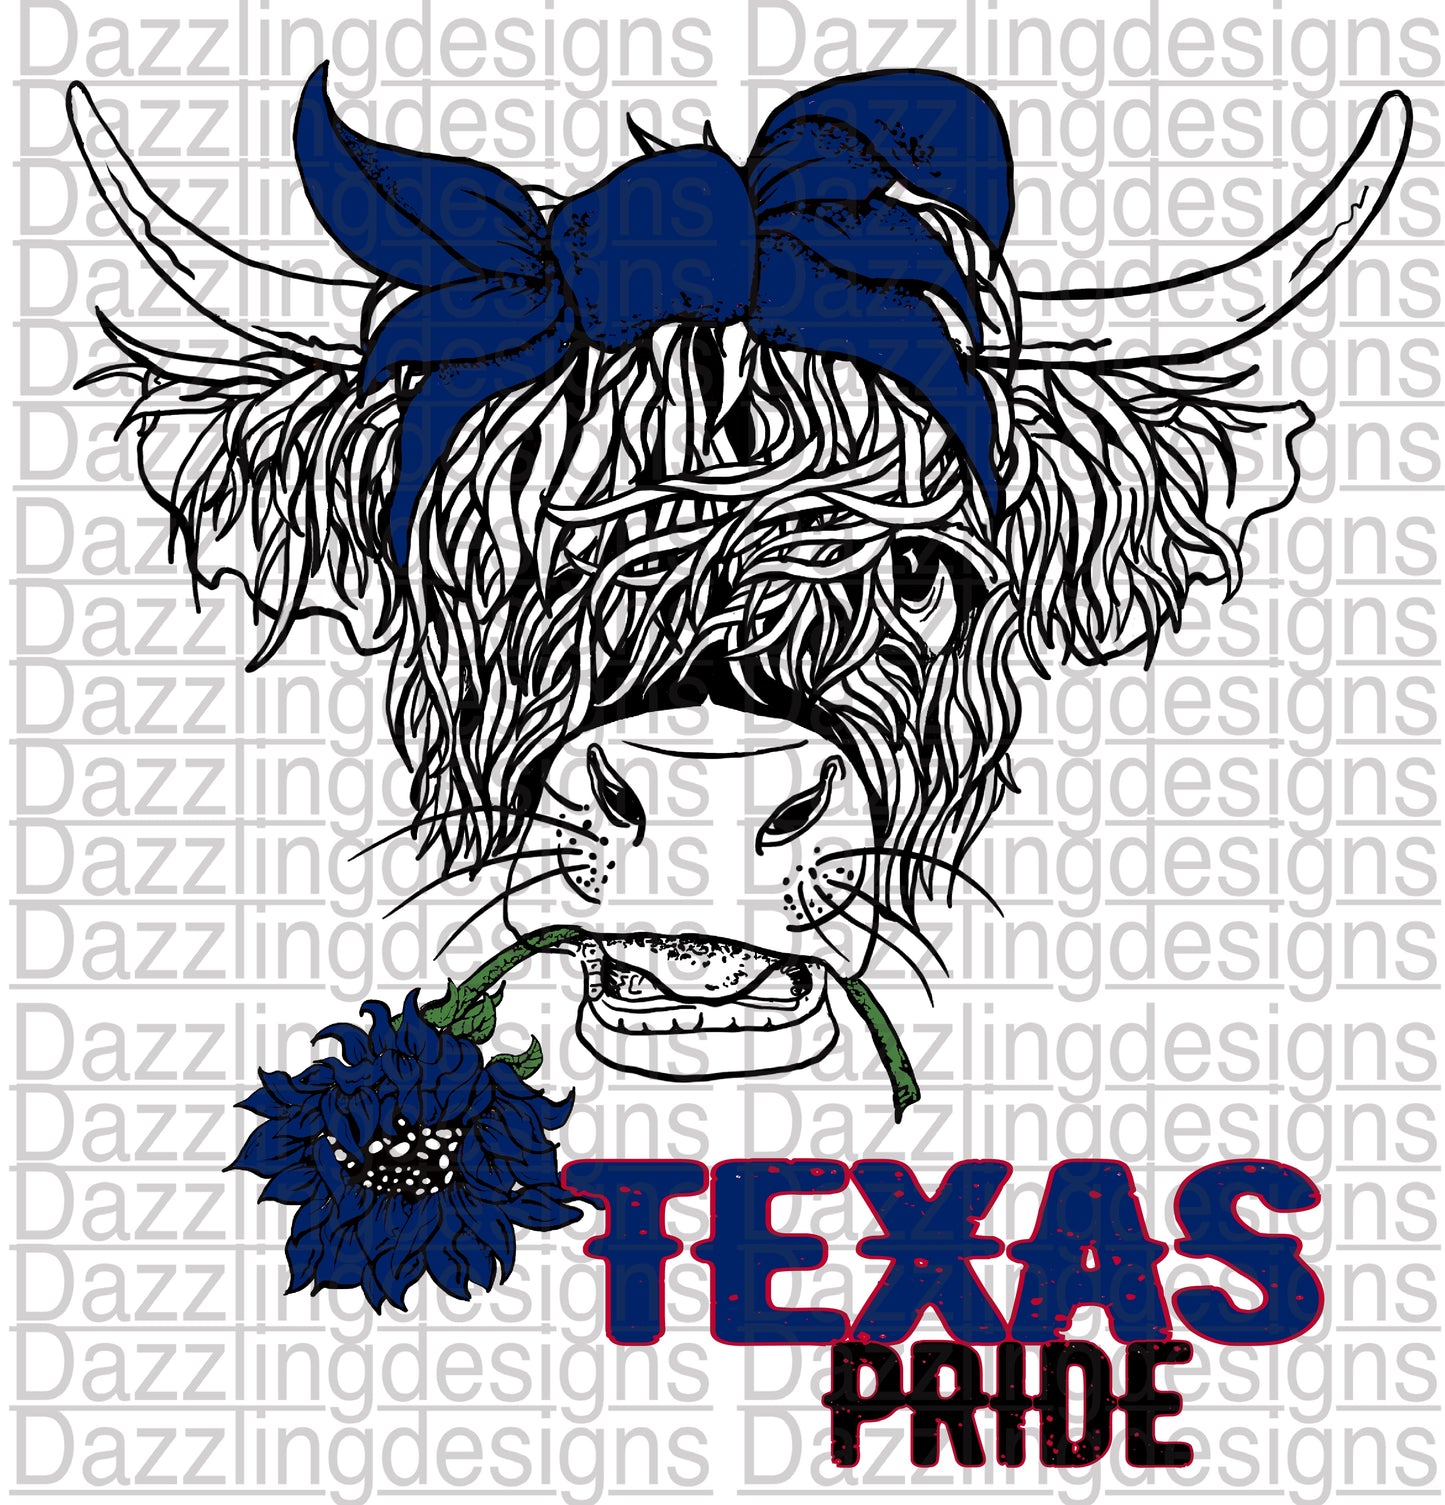 Texas Pride